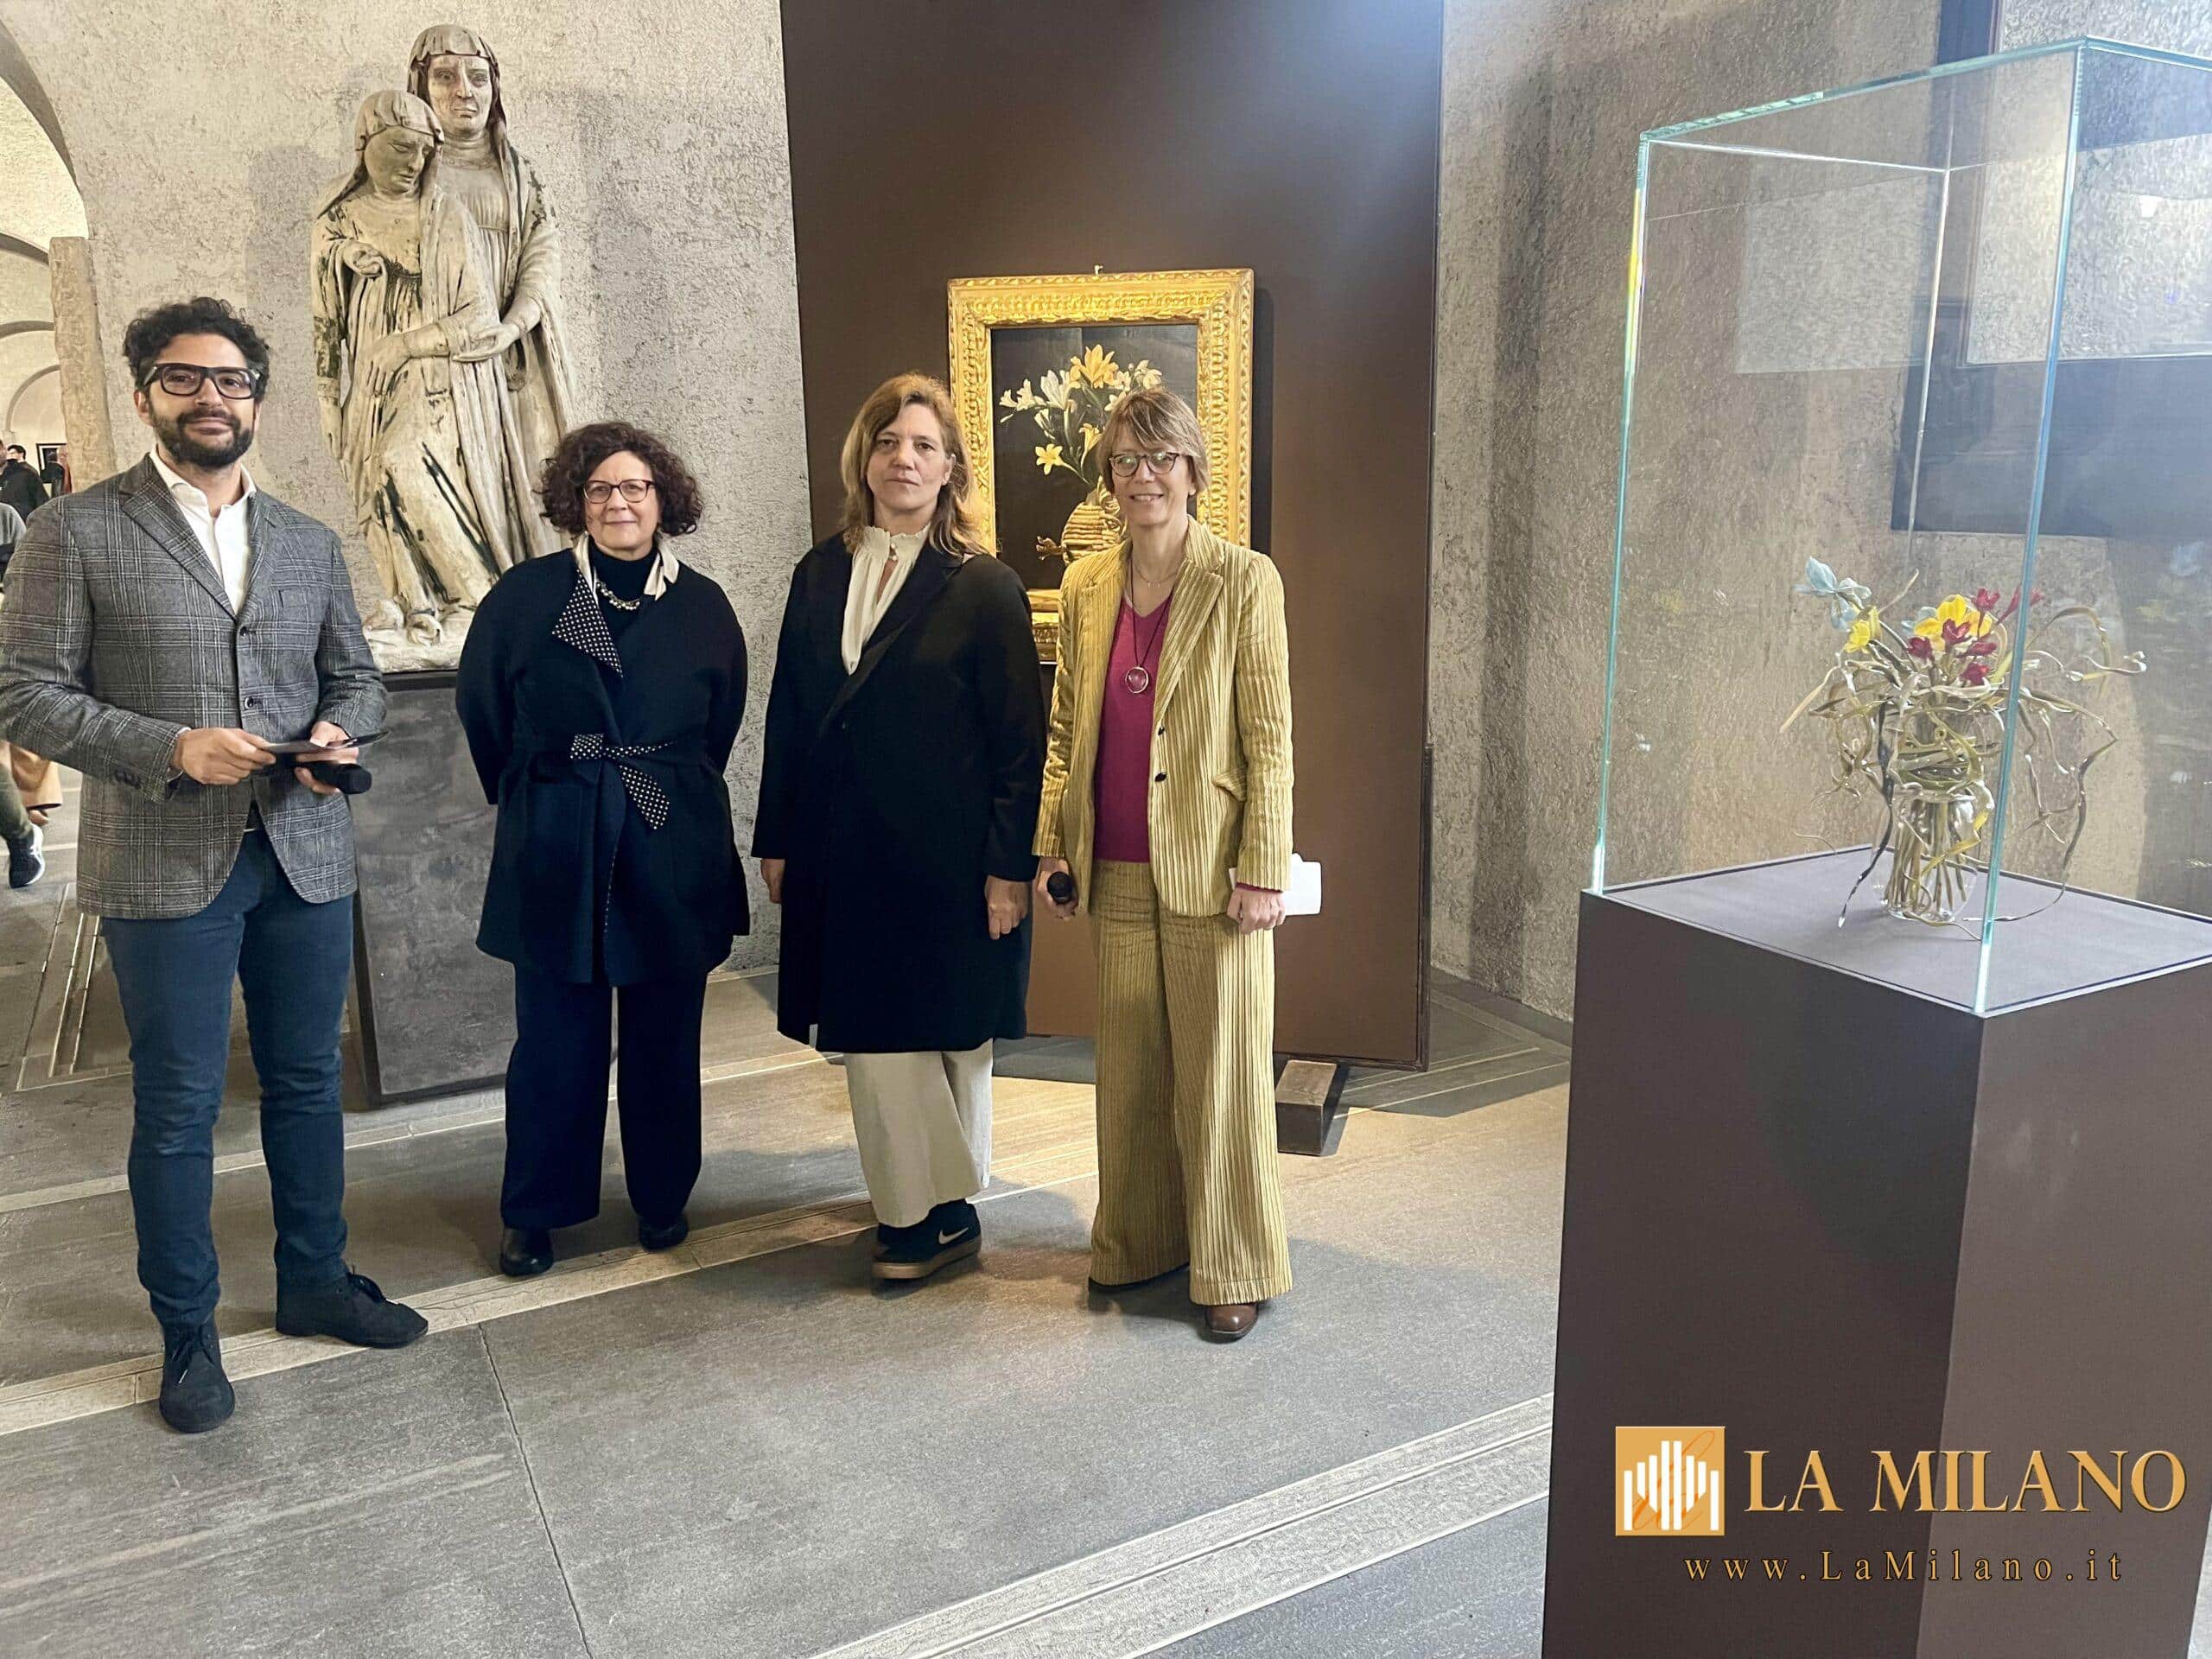 Verona, al Museo di Castelvecchio "Ospiti in Galleria" presenta la Fiasca spagliata con fiori in accostamento alla scultura Groviglio di Lilla Tabasso